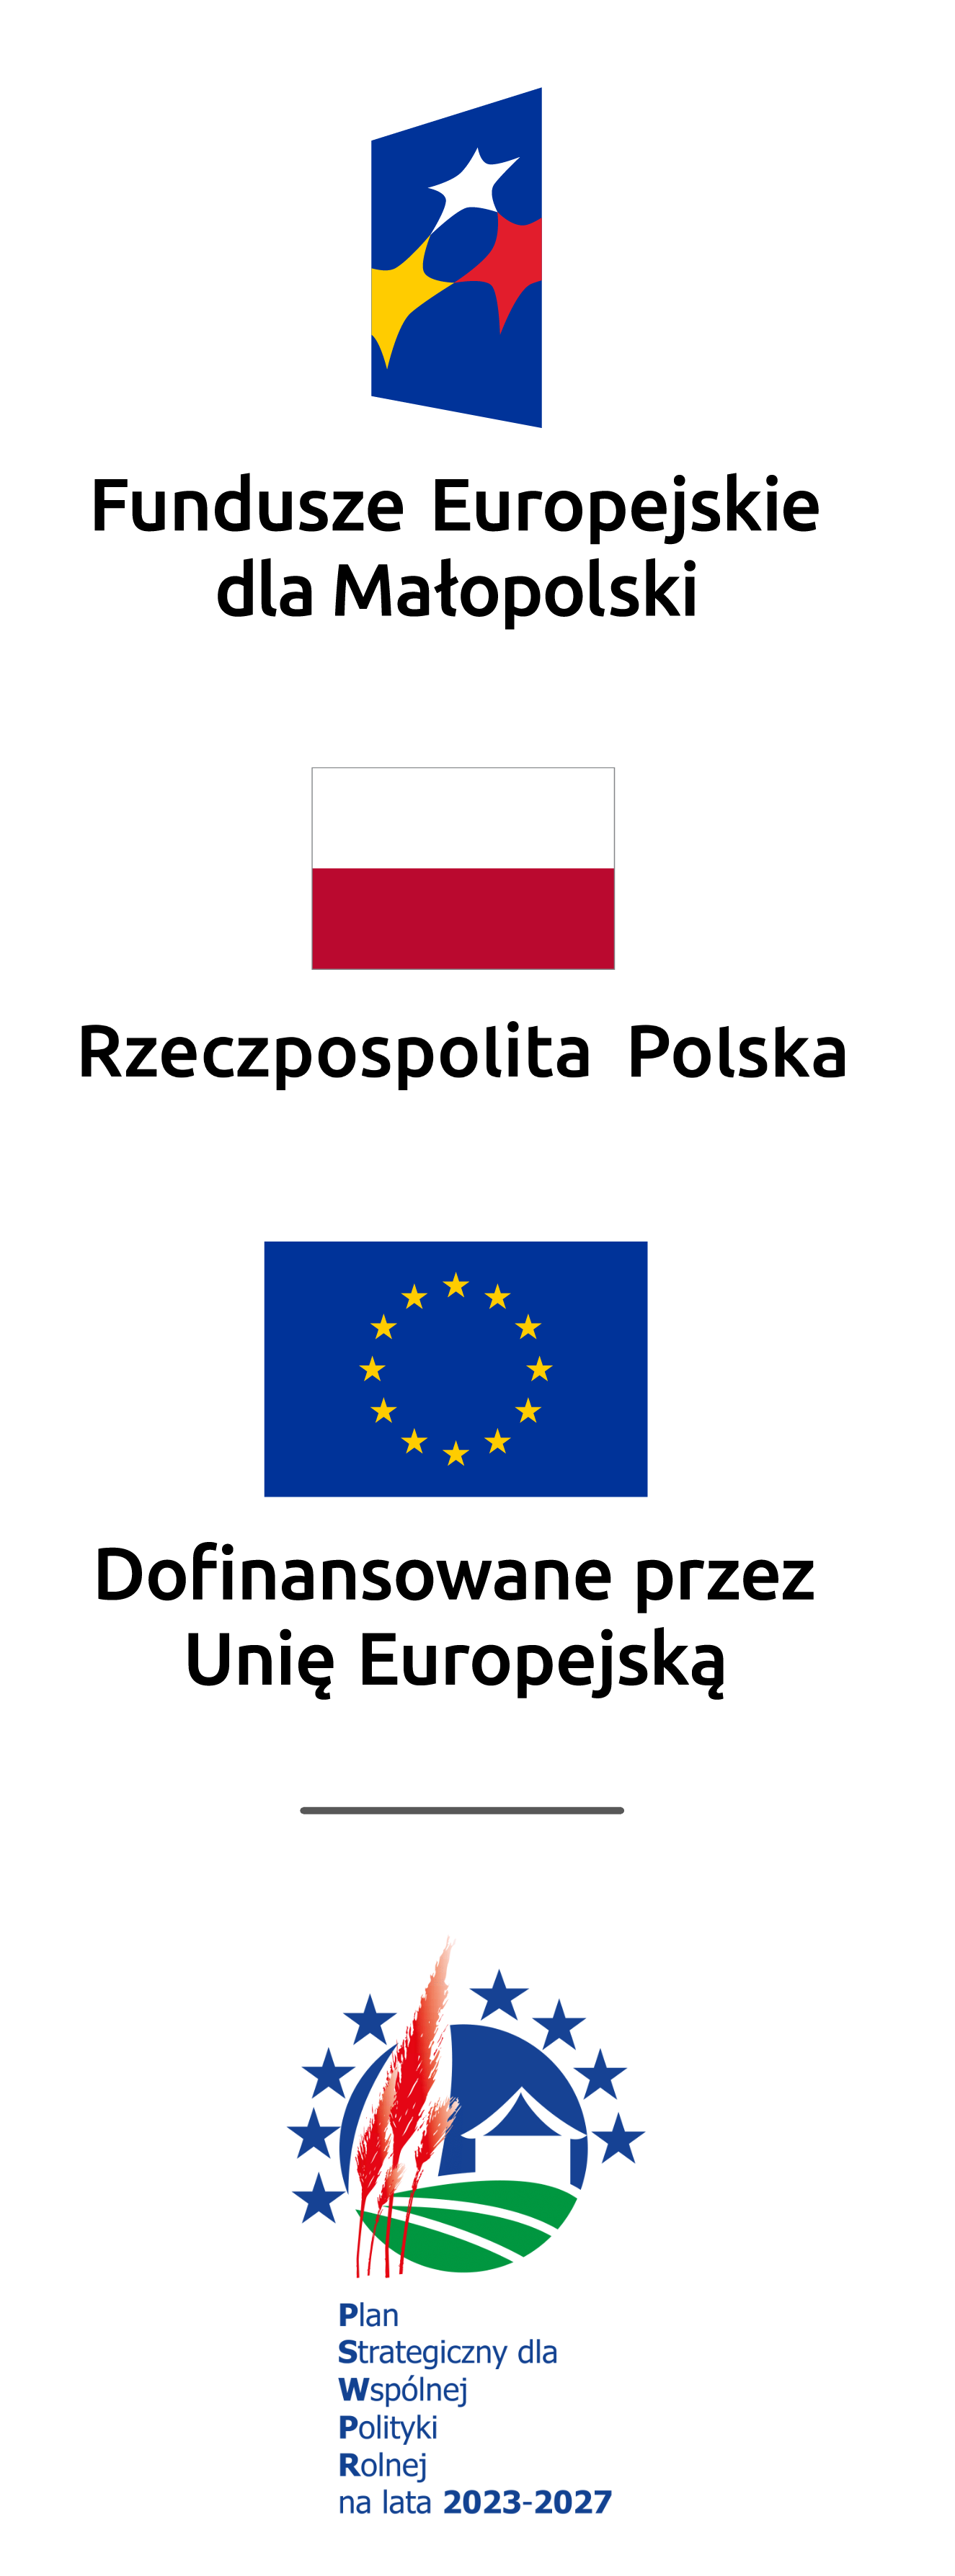 Logotypy: od góry Fundusze Europejskie dla Małopolski - niebieski prostokąt widziany z bocznej perspektywy z trzema gwiazdkami białą, żółtą i czerwoną, poniżej Rzeczpospolita Polska - biało czerwona flaga polski, poniżej Dofinansowanie przez Unię Europejską - flaga unii - żółte gwiazdki ułożone w okrąg na niebieskim tle, poniżej pod podkreśleniem Plan Strategiczny dla Wspólnej Polityki Rolnej na lata 2023-2027 - kółko z kłosami domkiem i polem przedstawionymi symbolicznie oraz 8 gwiazdek wokół kółka